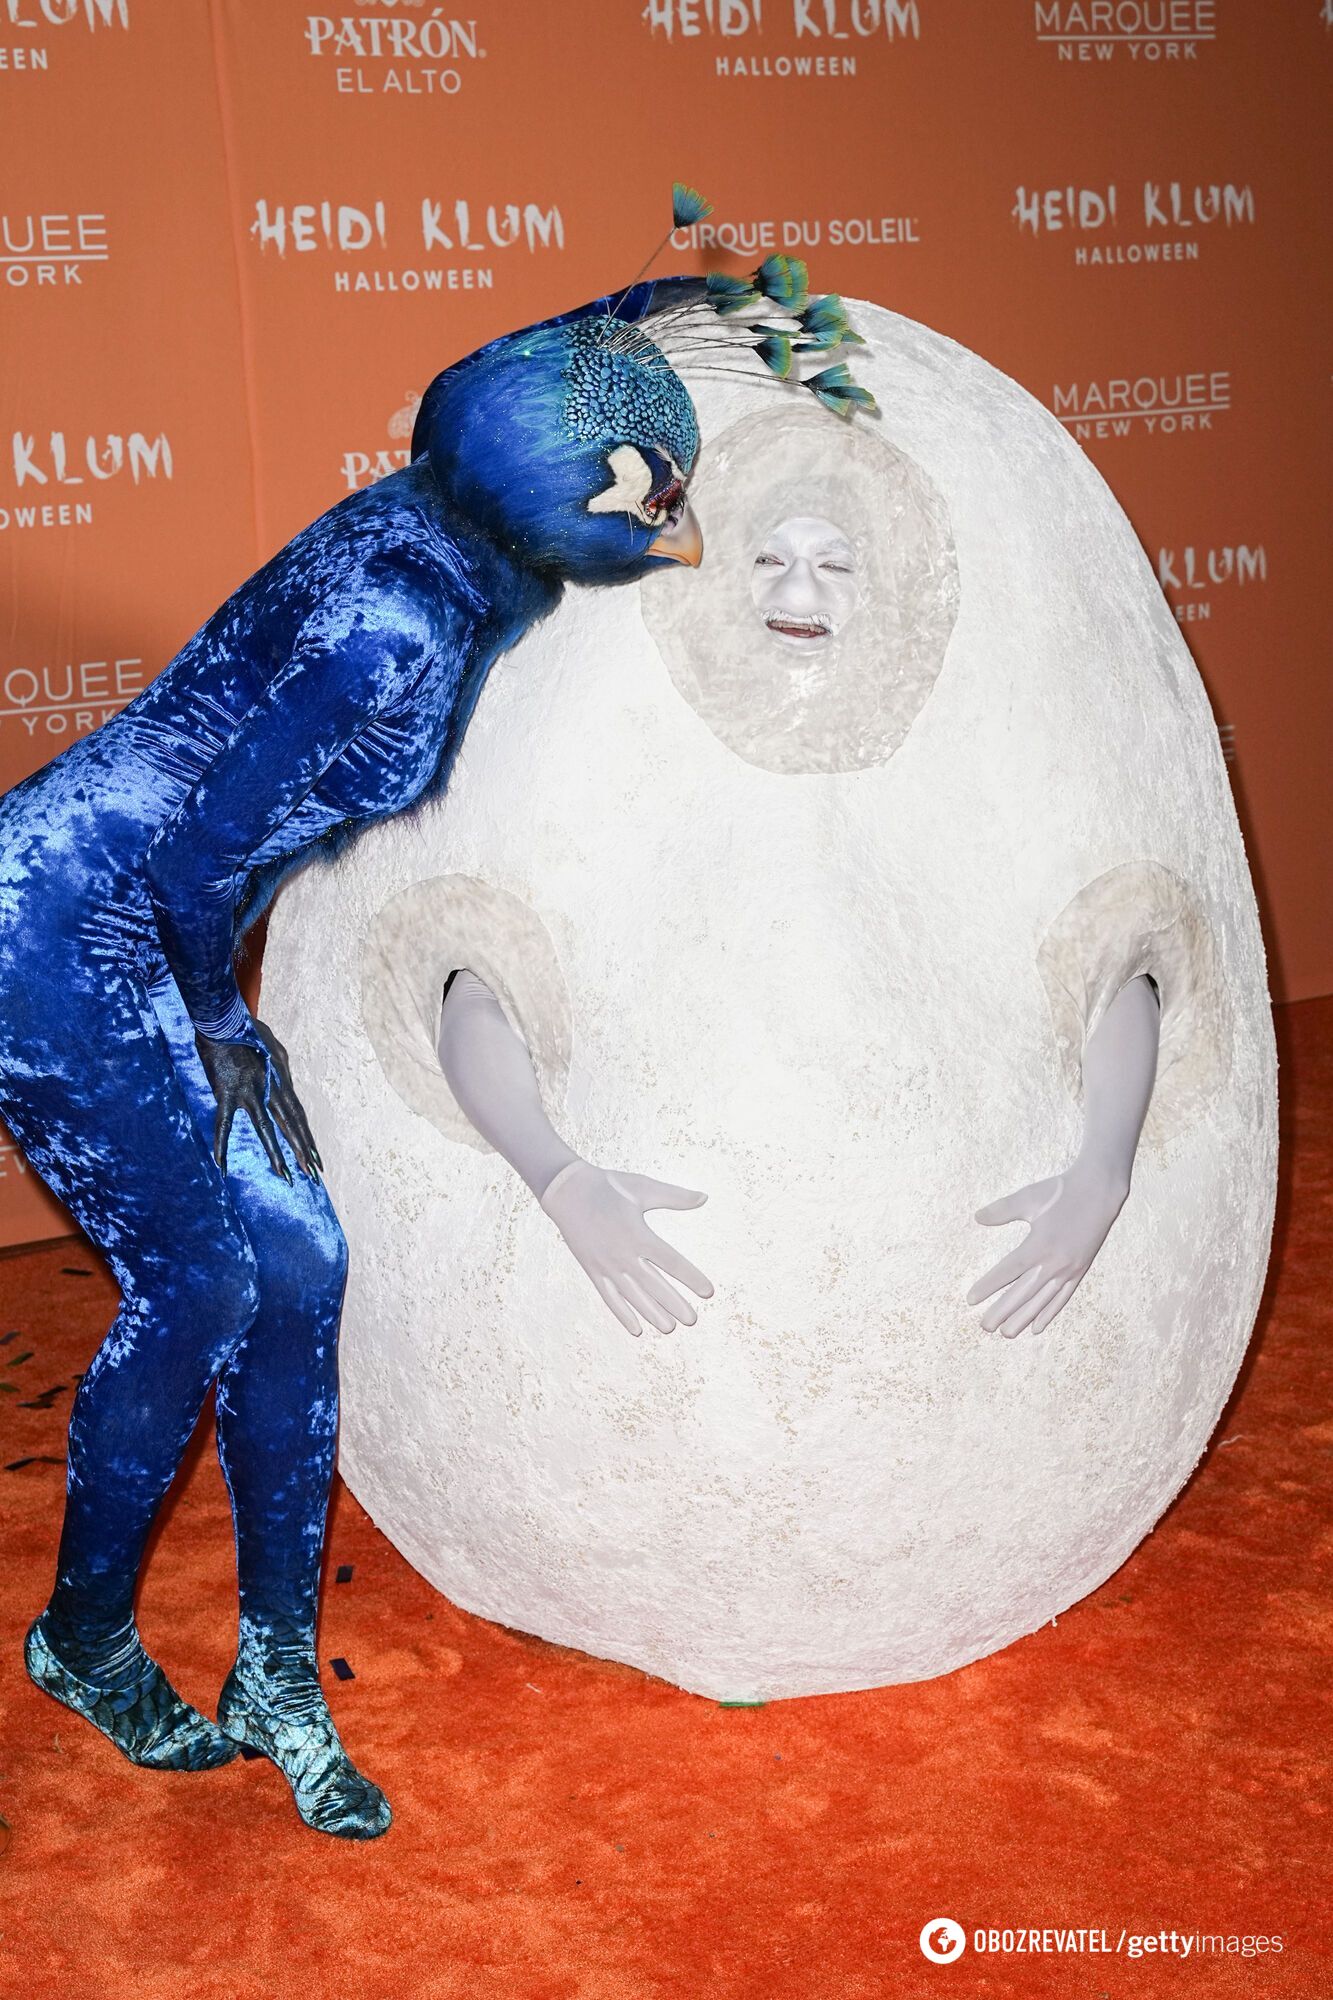 "Королева Хэллоуина" Хайди Клум снова шокировала публику: 10 самых эпатажных костюмов супермодели